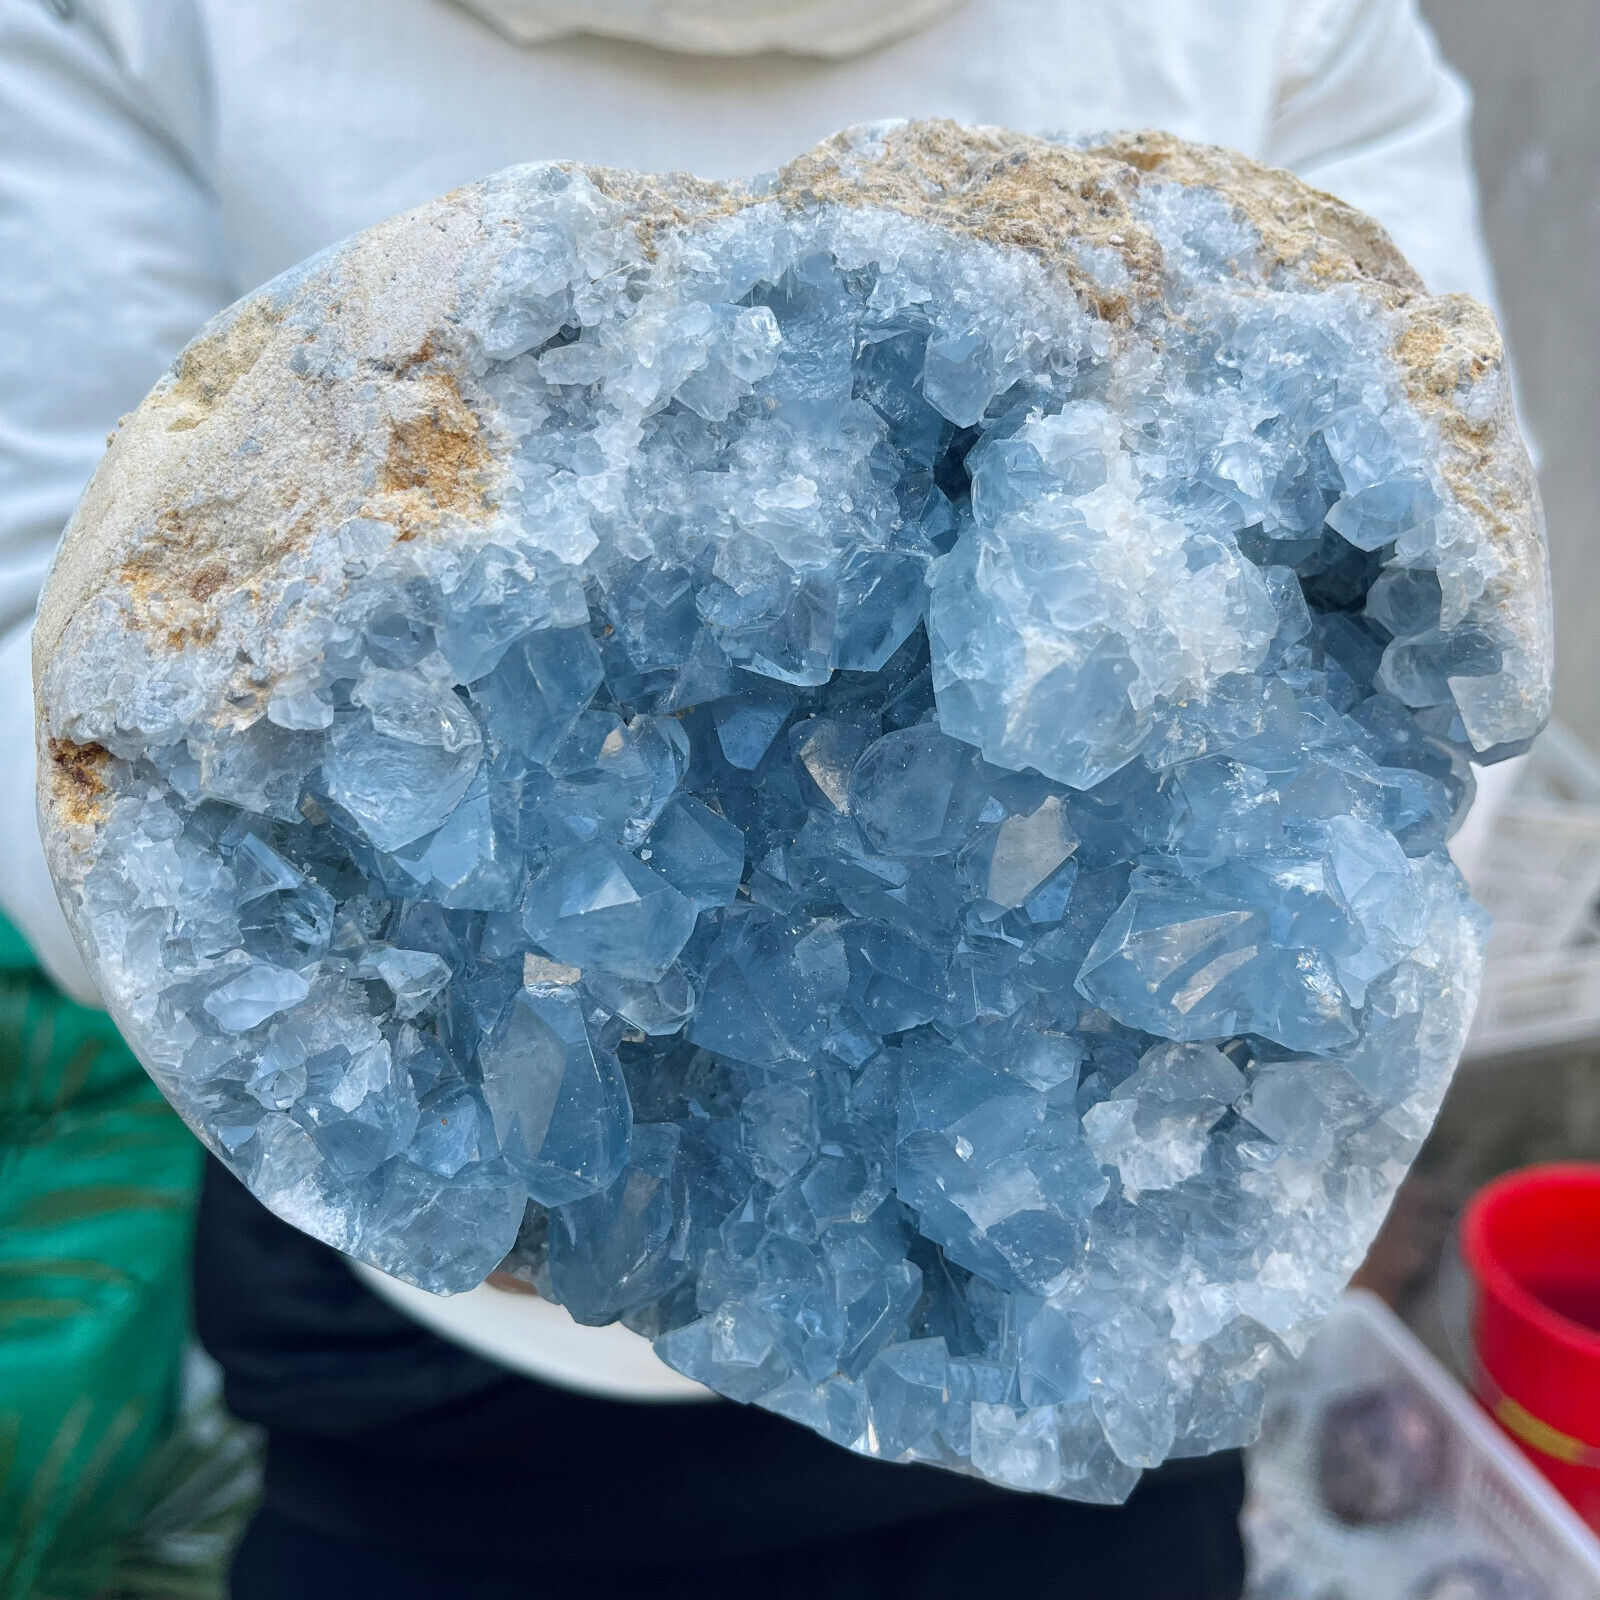 9.4lb Large Natural Blue Celestite Crystal Geode Quartz Cluster Mineral Specime